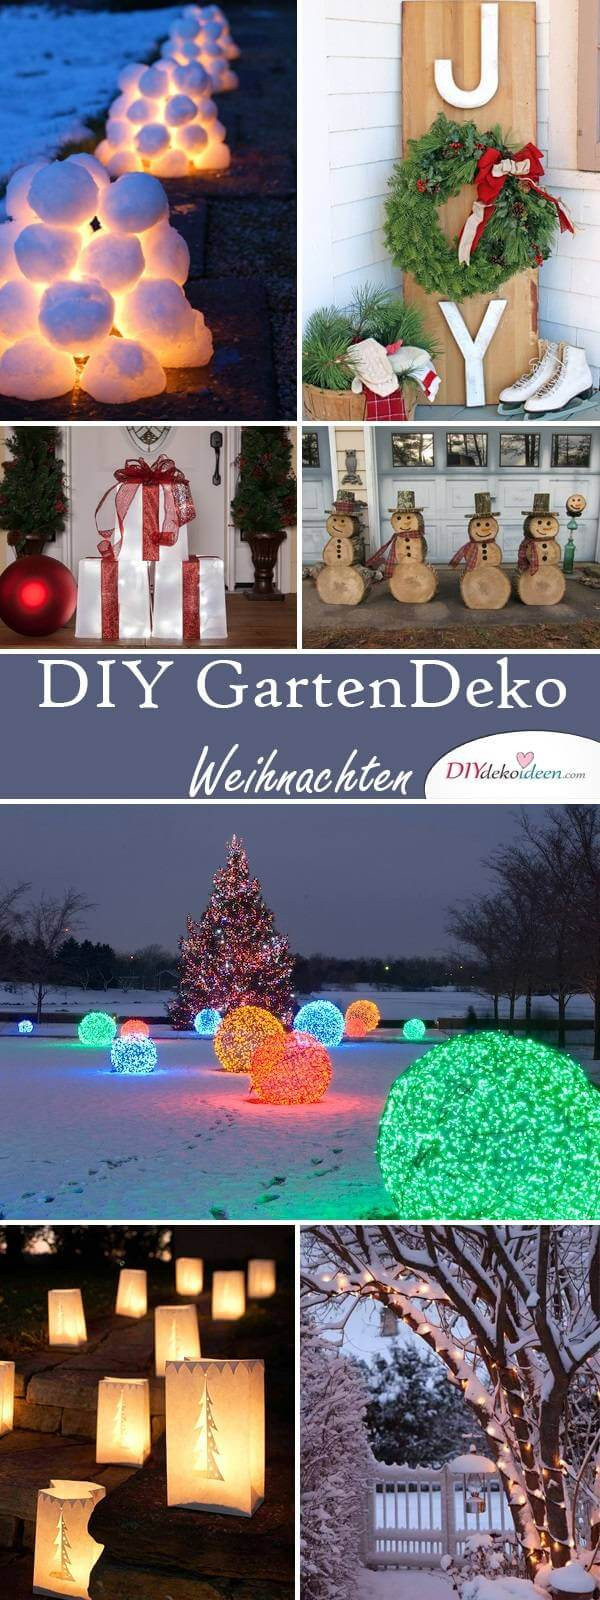 Diy Ideen Weihnachten
 DIY Deko Ideen zu Weihnachten den Garten gestalten